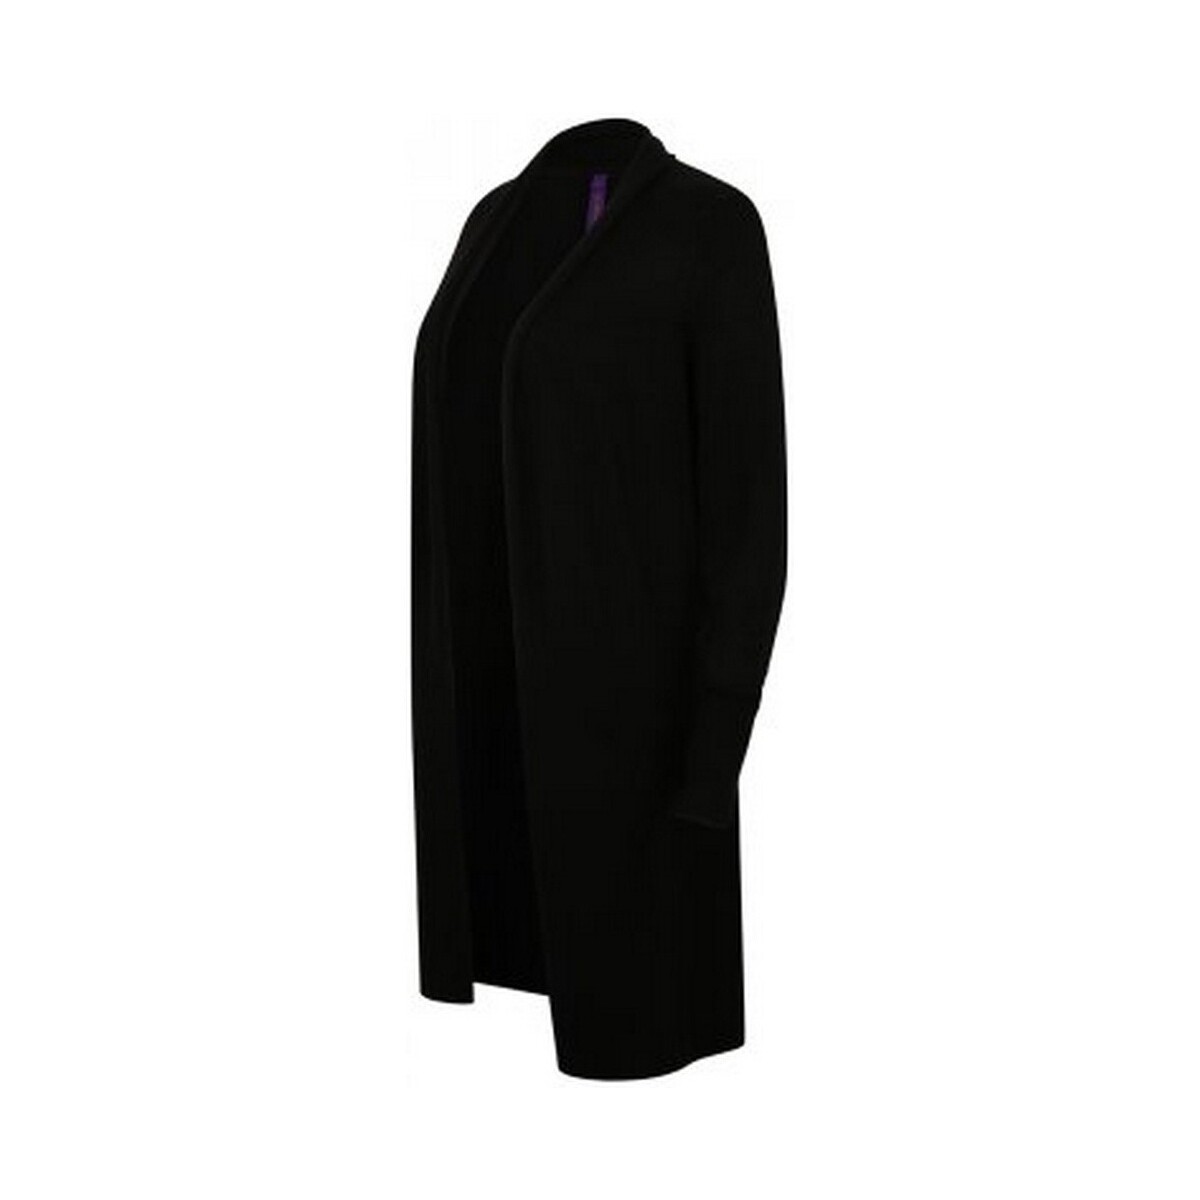 Vêtements Femme Gilets / Cardigans Henbury HB719 Noir